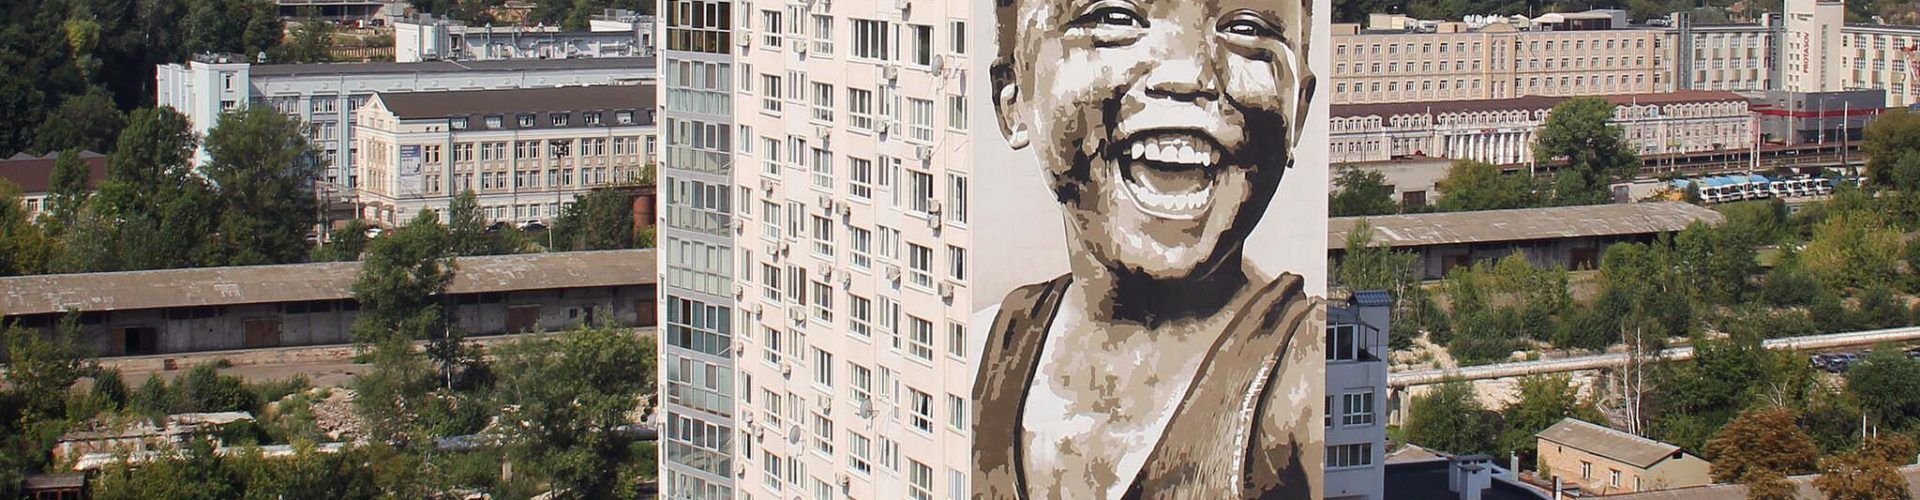 Un artista internacional, guanyador del concurs d’art mural “Vinaròs Art Urbà”